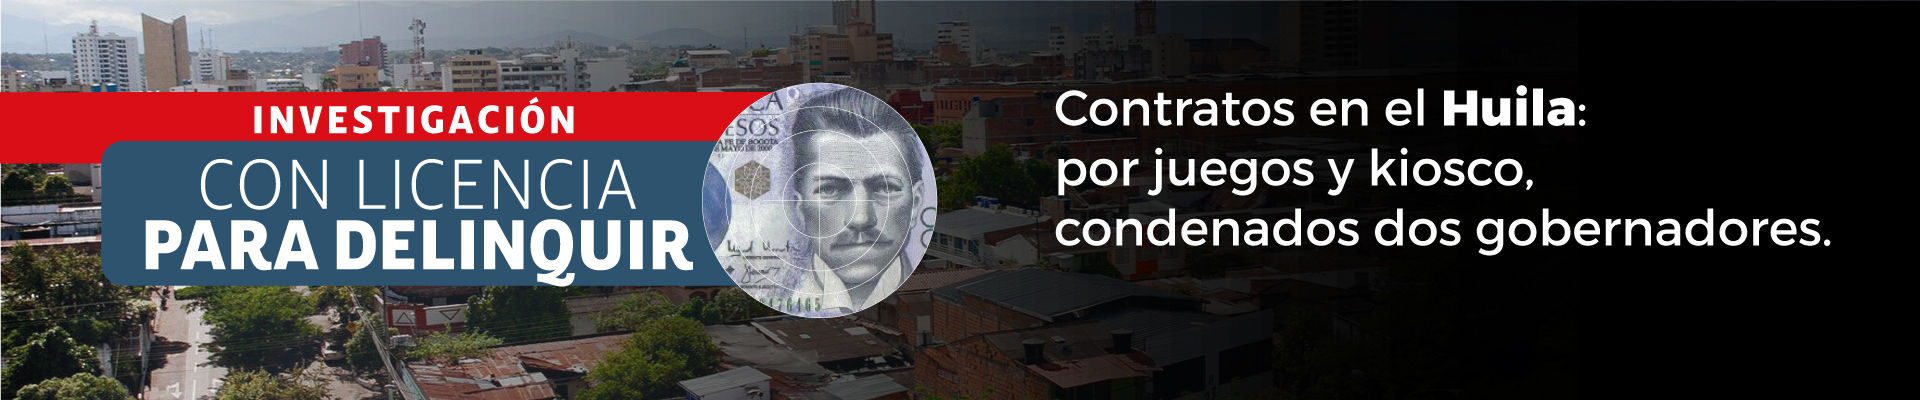 Corrupción en Colombia por departamentos